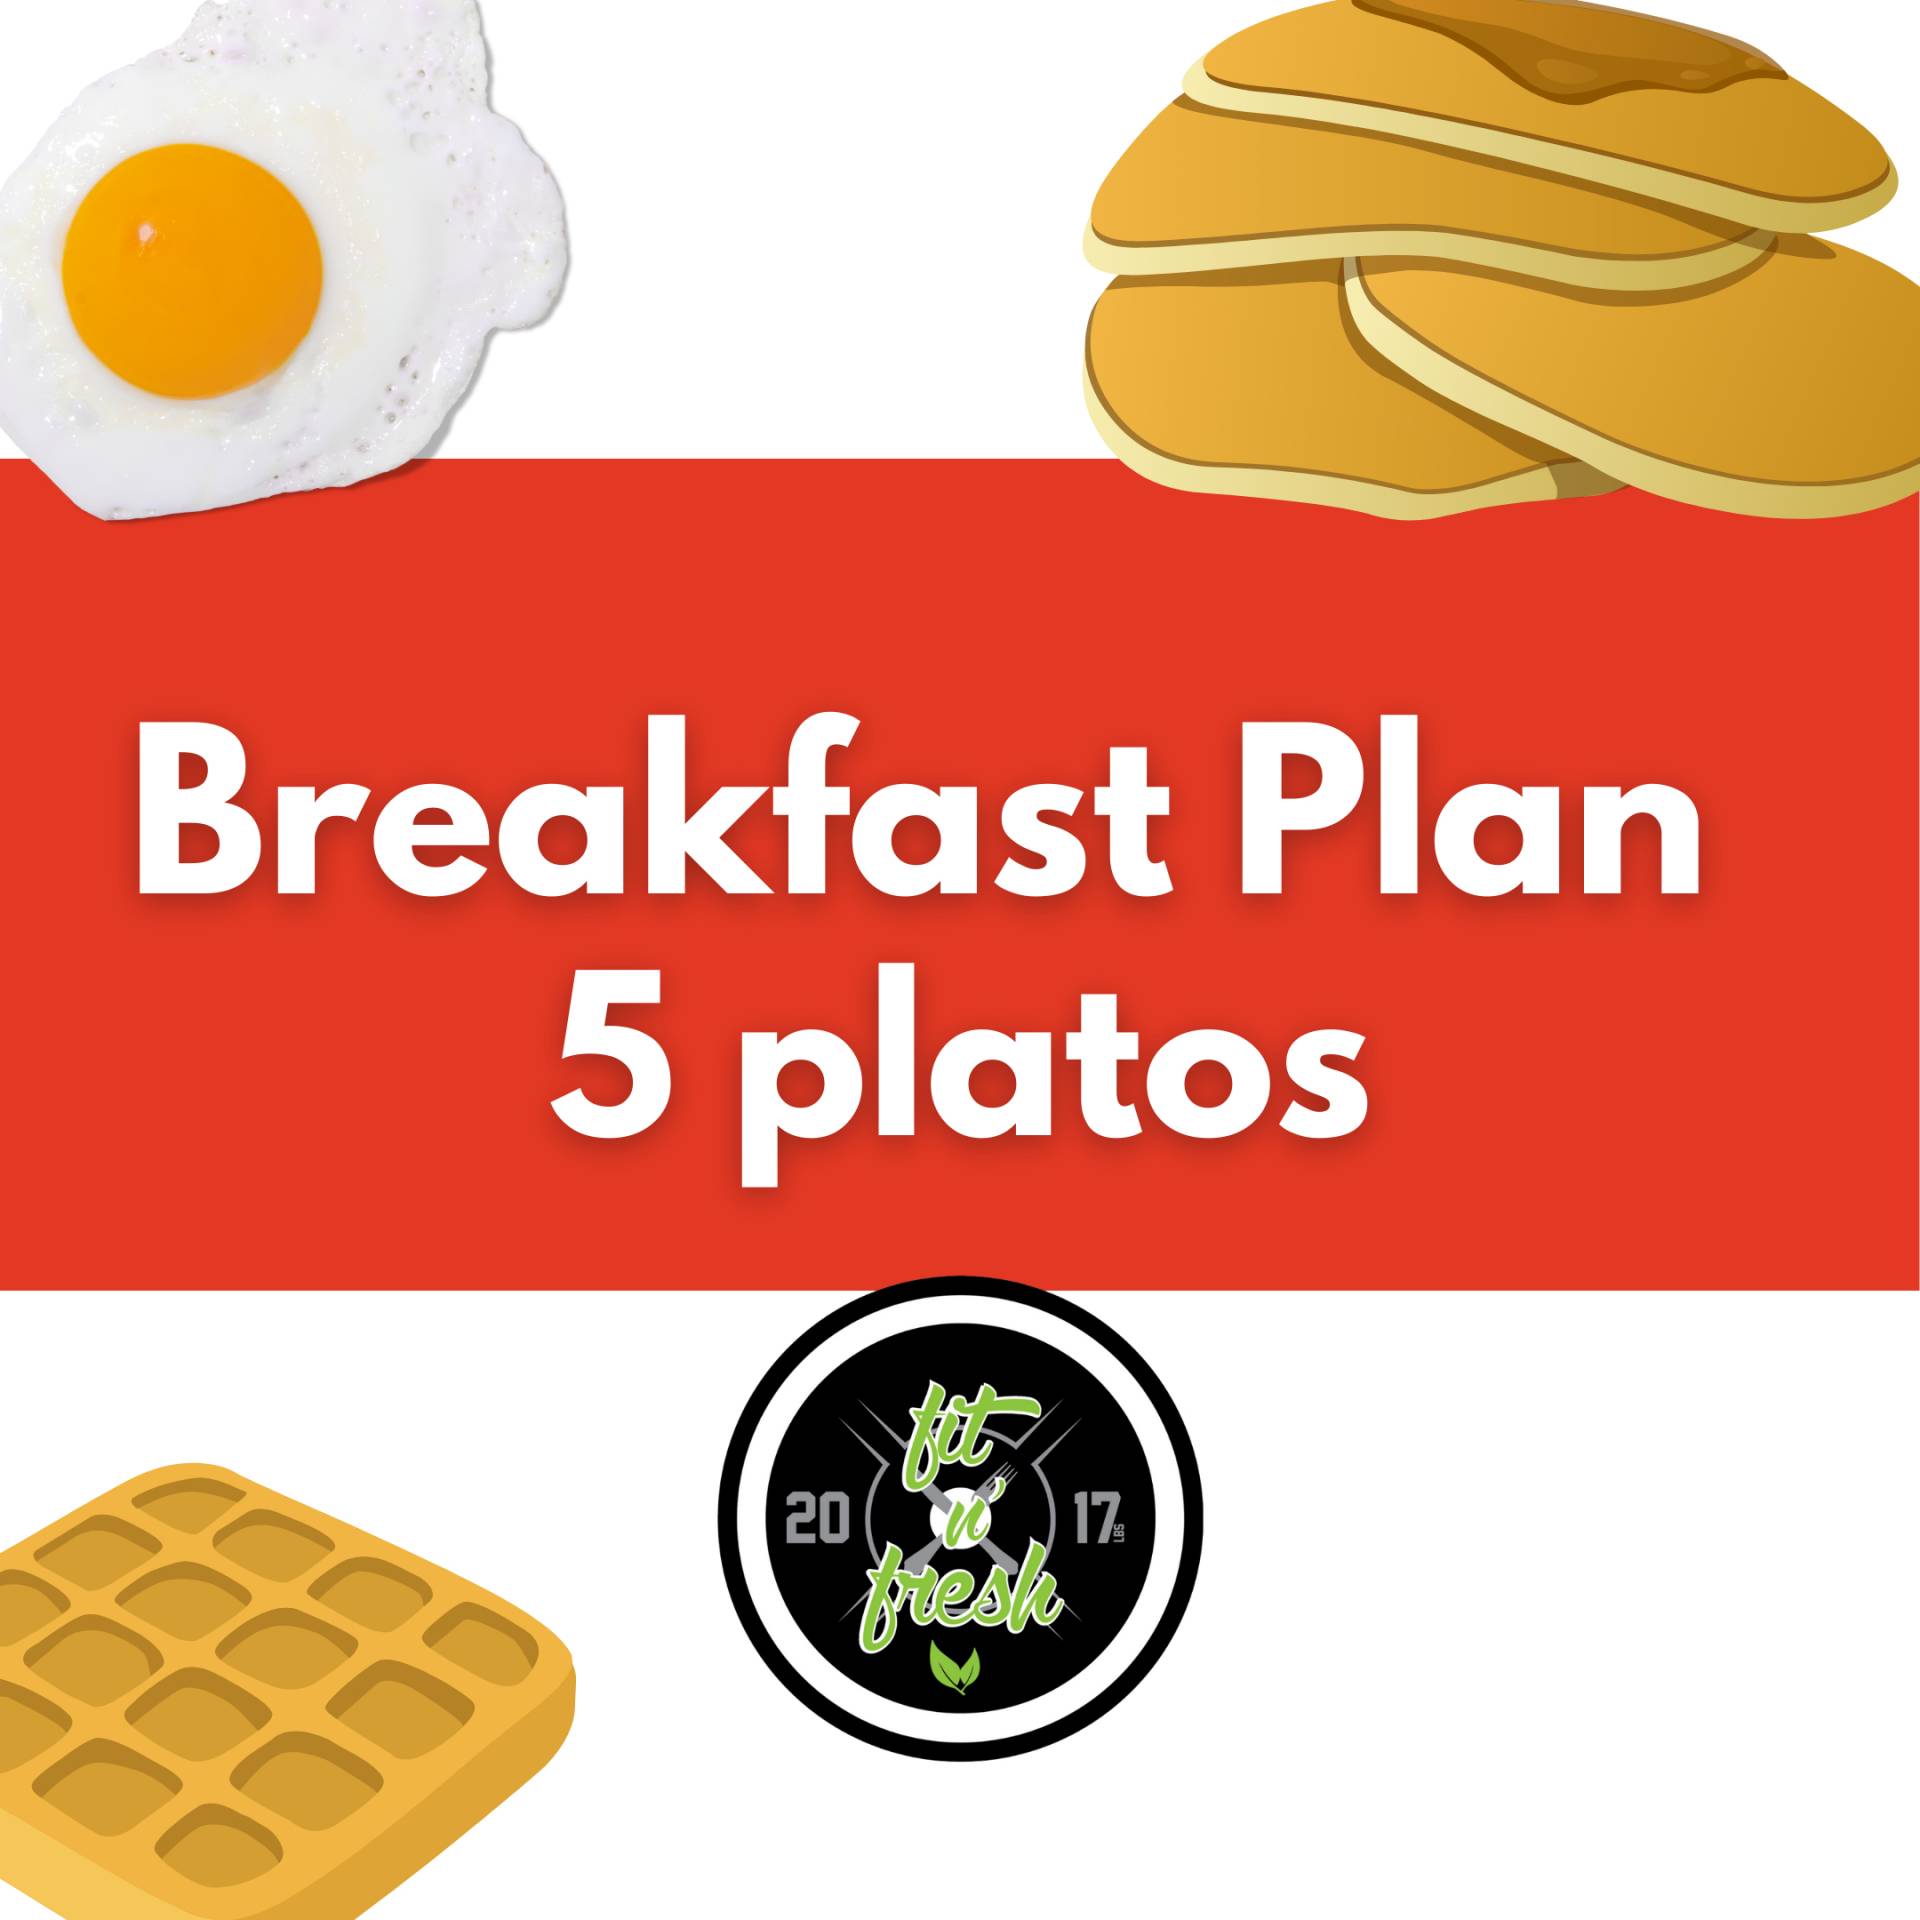 Breakfast Plan